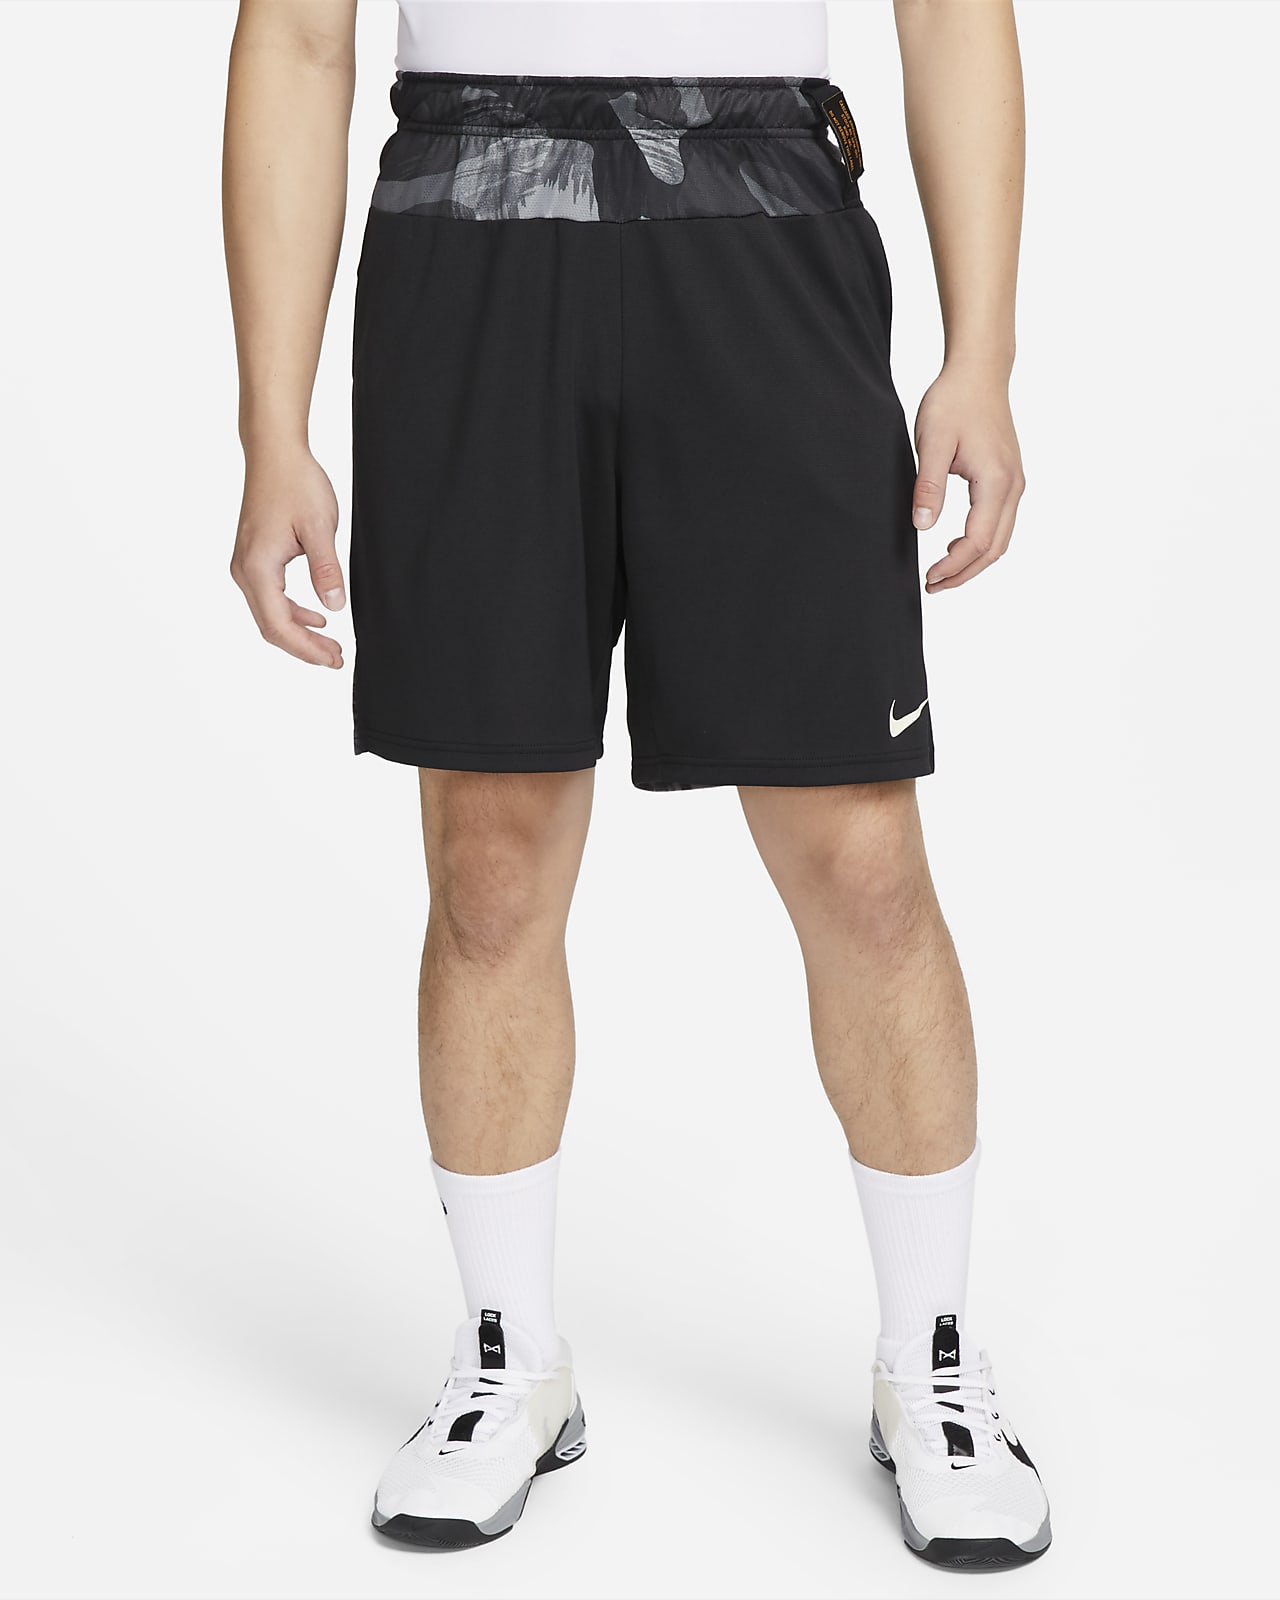 Nike Dri-FIT 男款針織迷彩訓練短褲